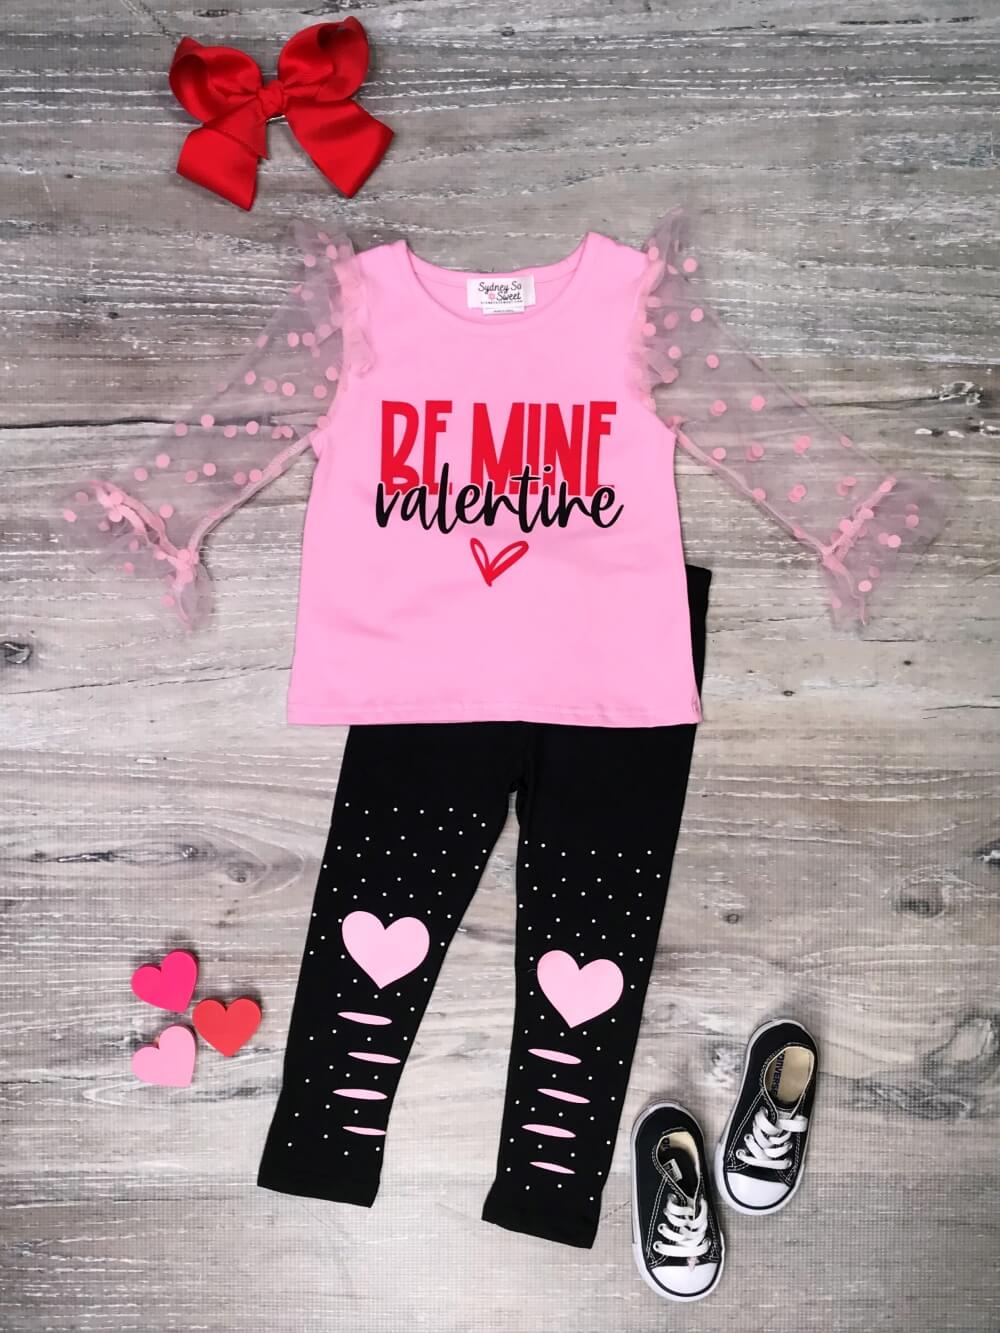 NEW Womens Valentine Day Leggings, Be Mine Heart Printed Leggings